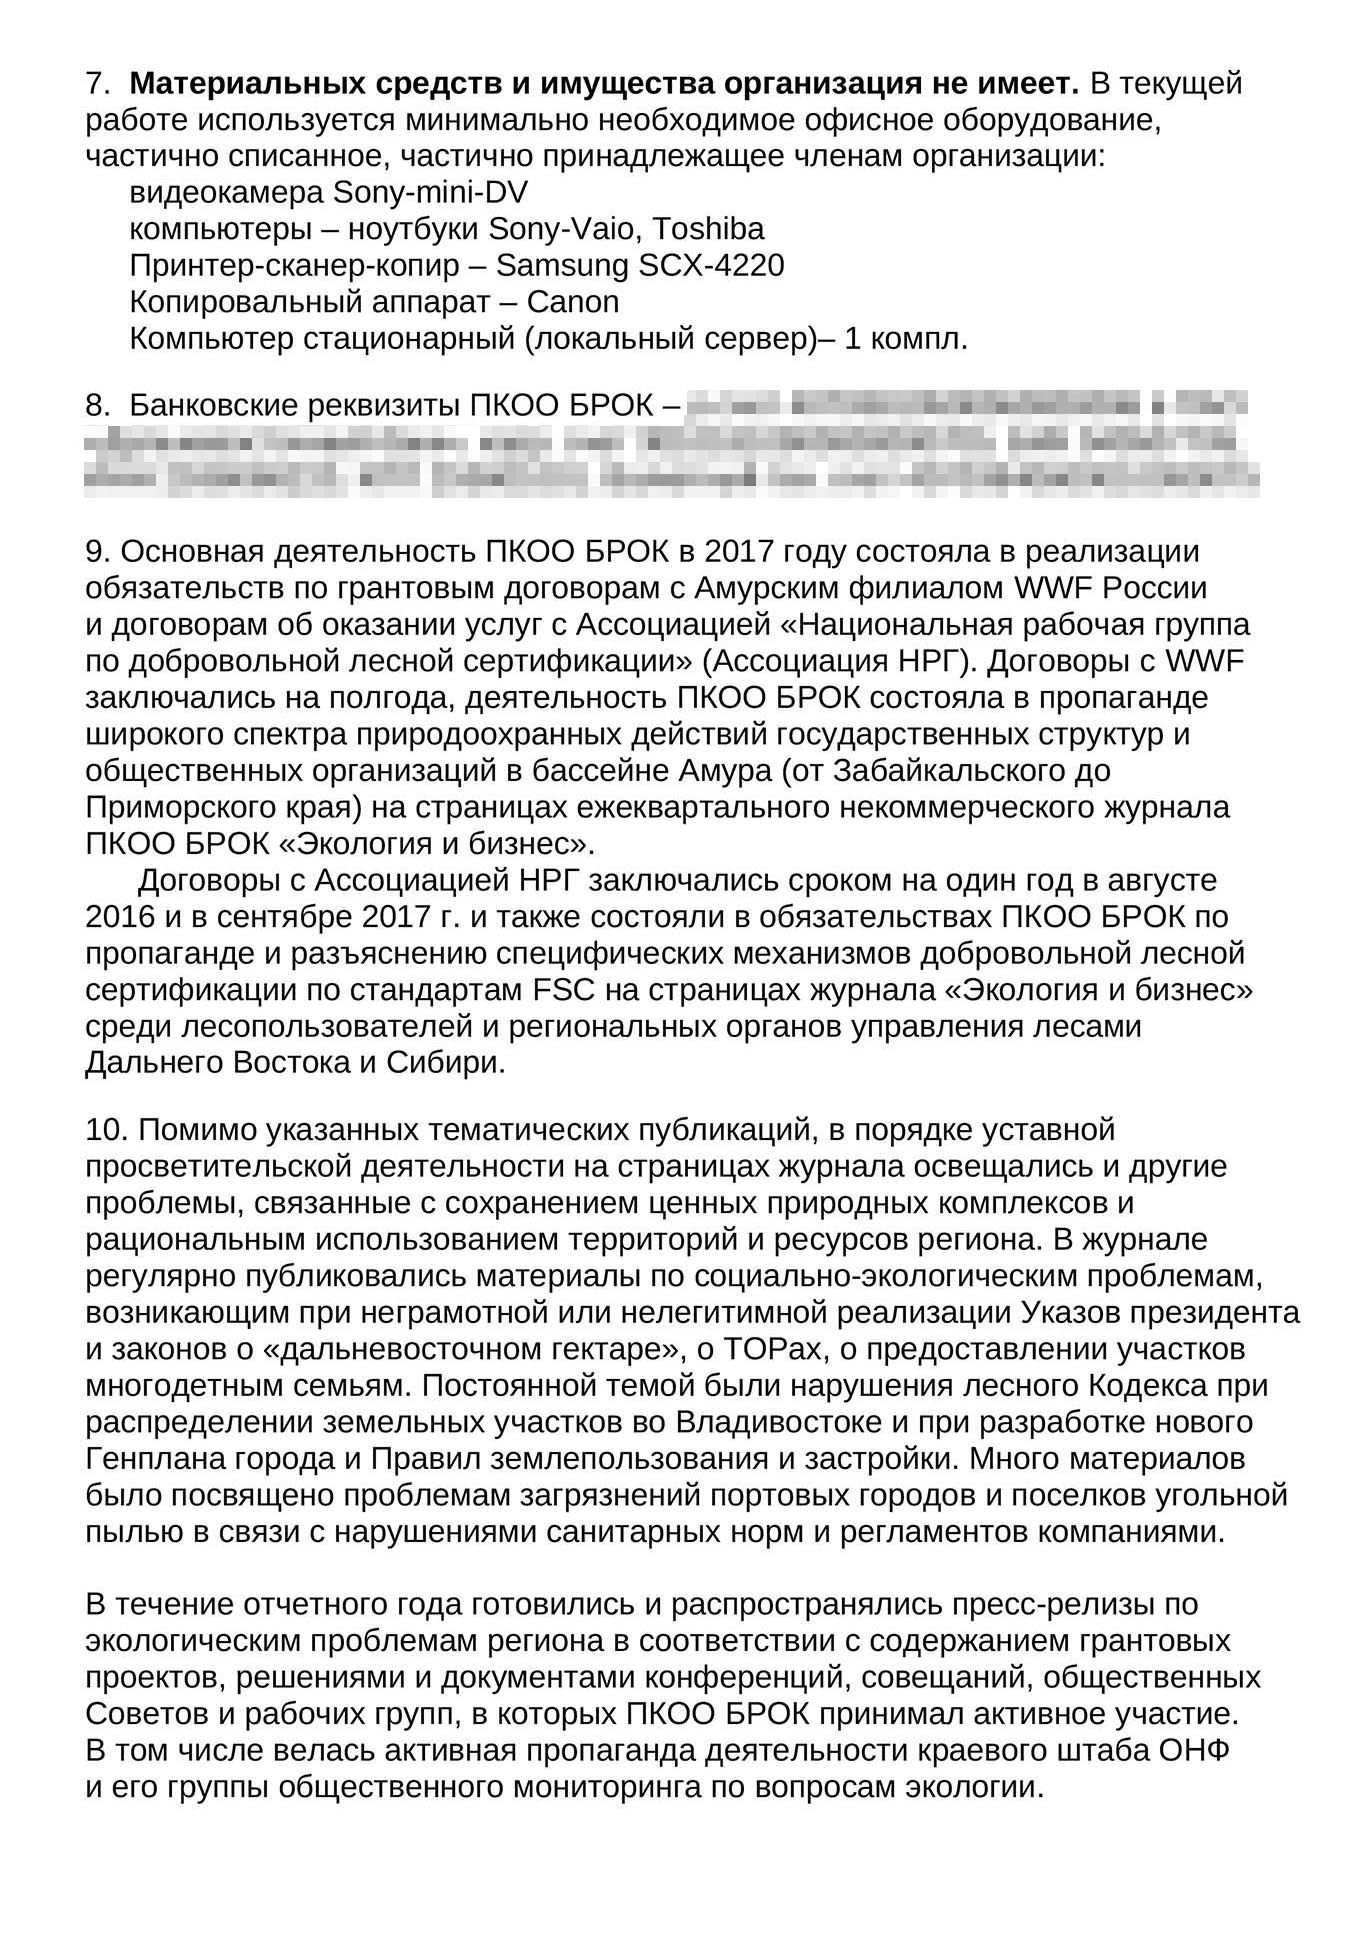 Так выглядит отчет НКО «БРОК» из Приморья: доходы организации — менее 3 млн рублей